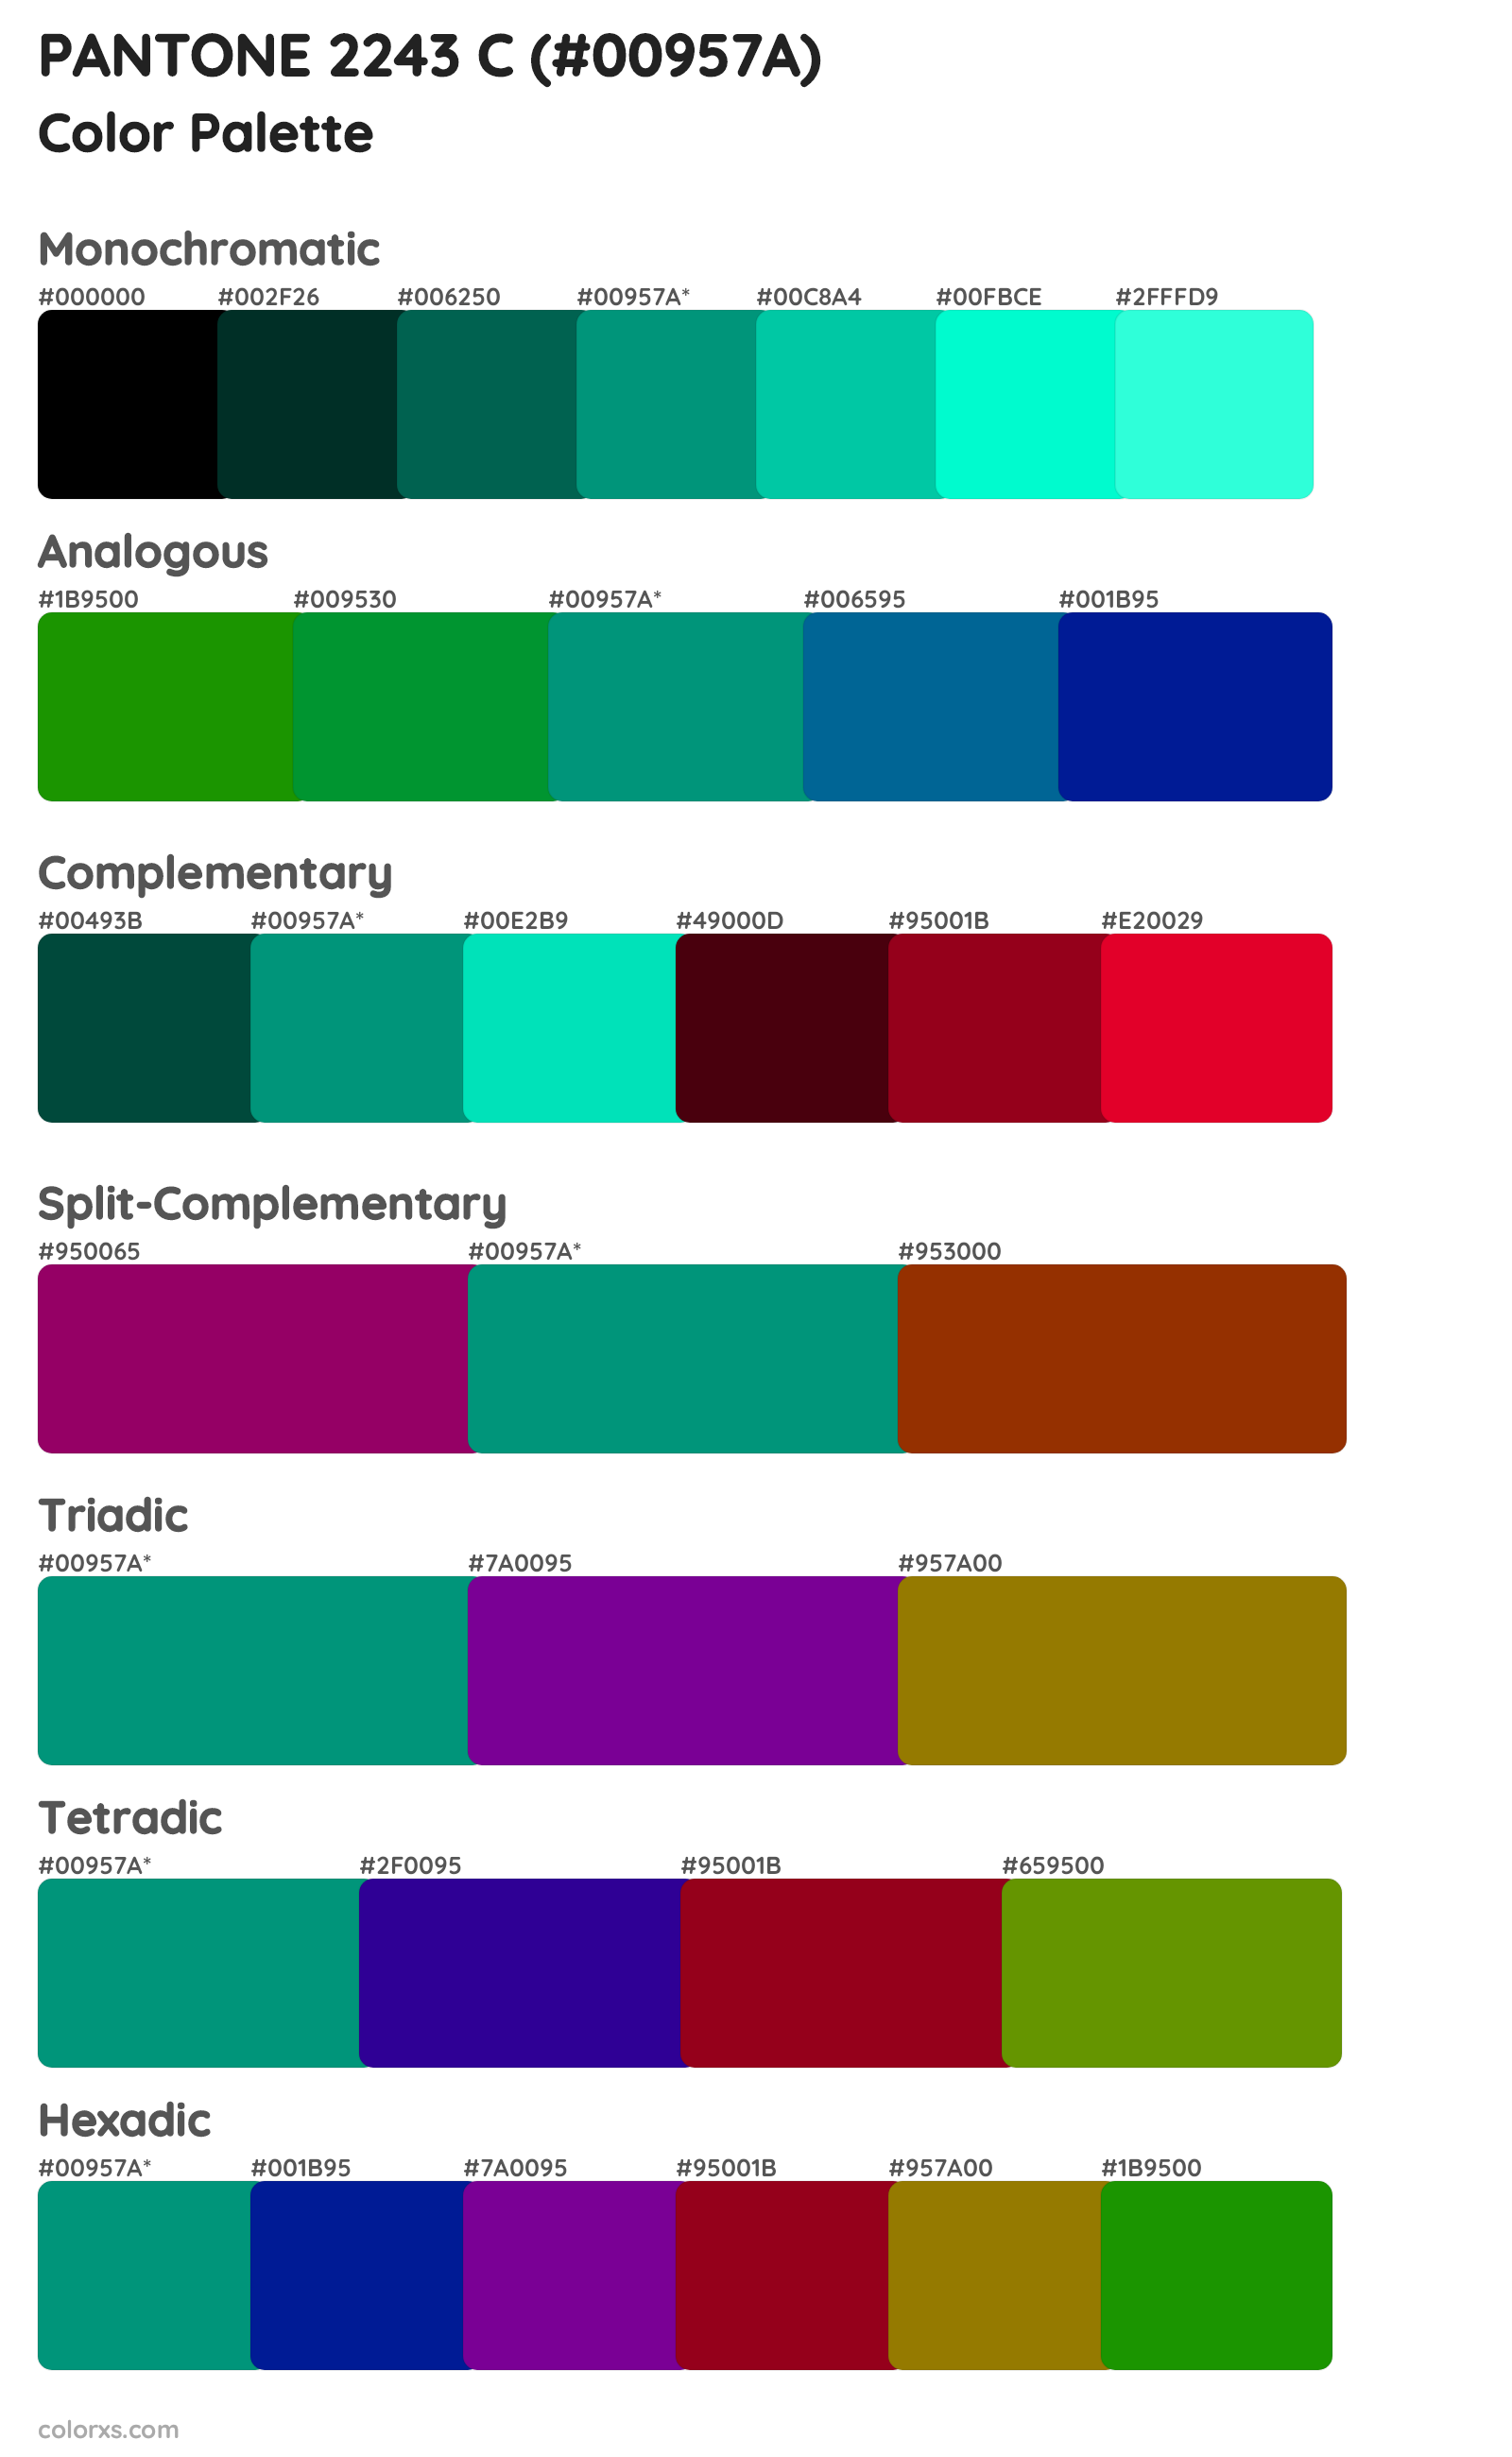 PANTONE 2243 C Color Scheme Palettes